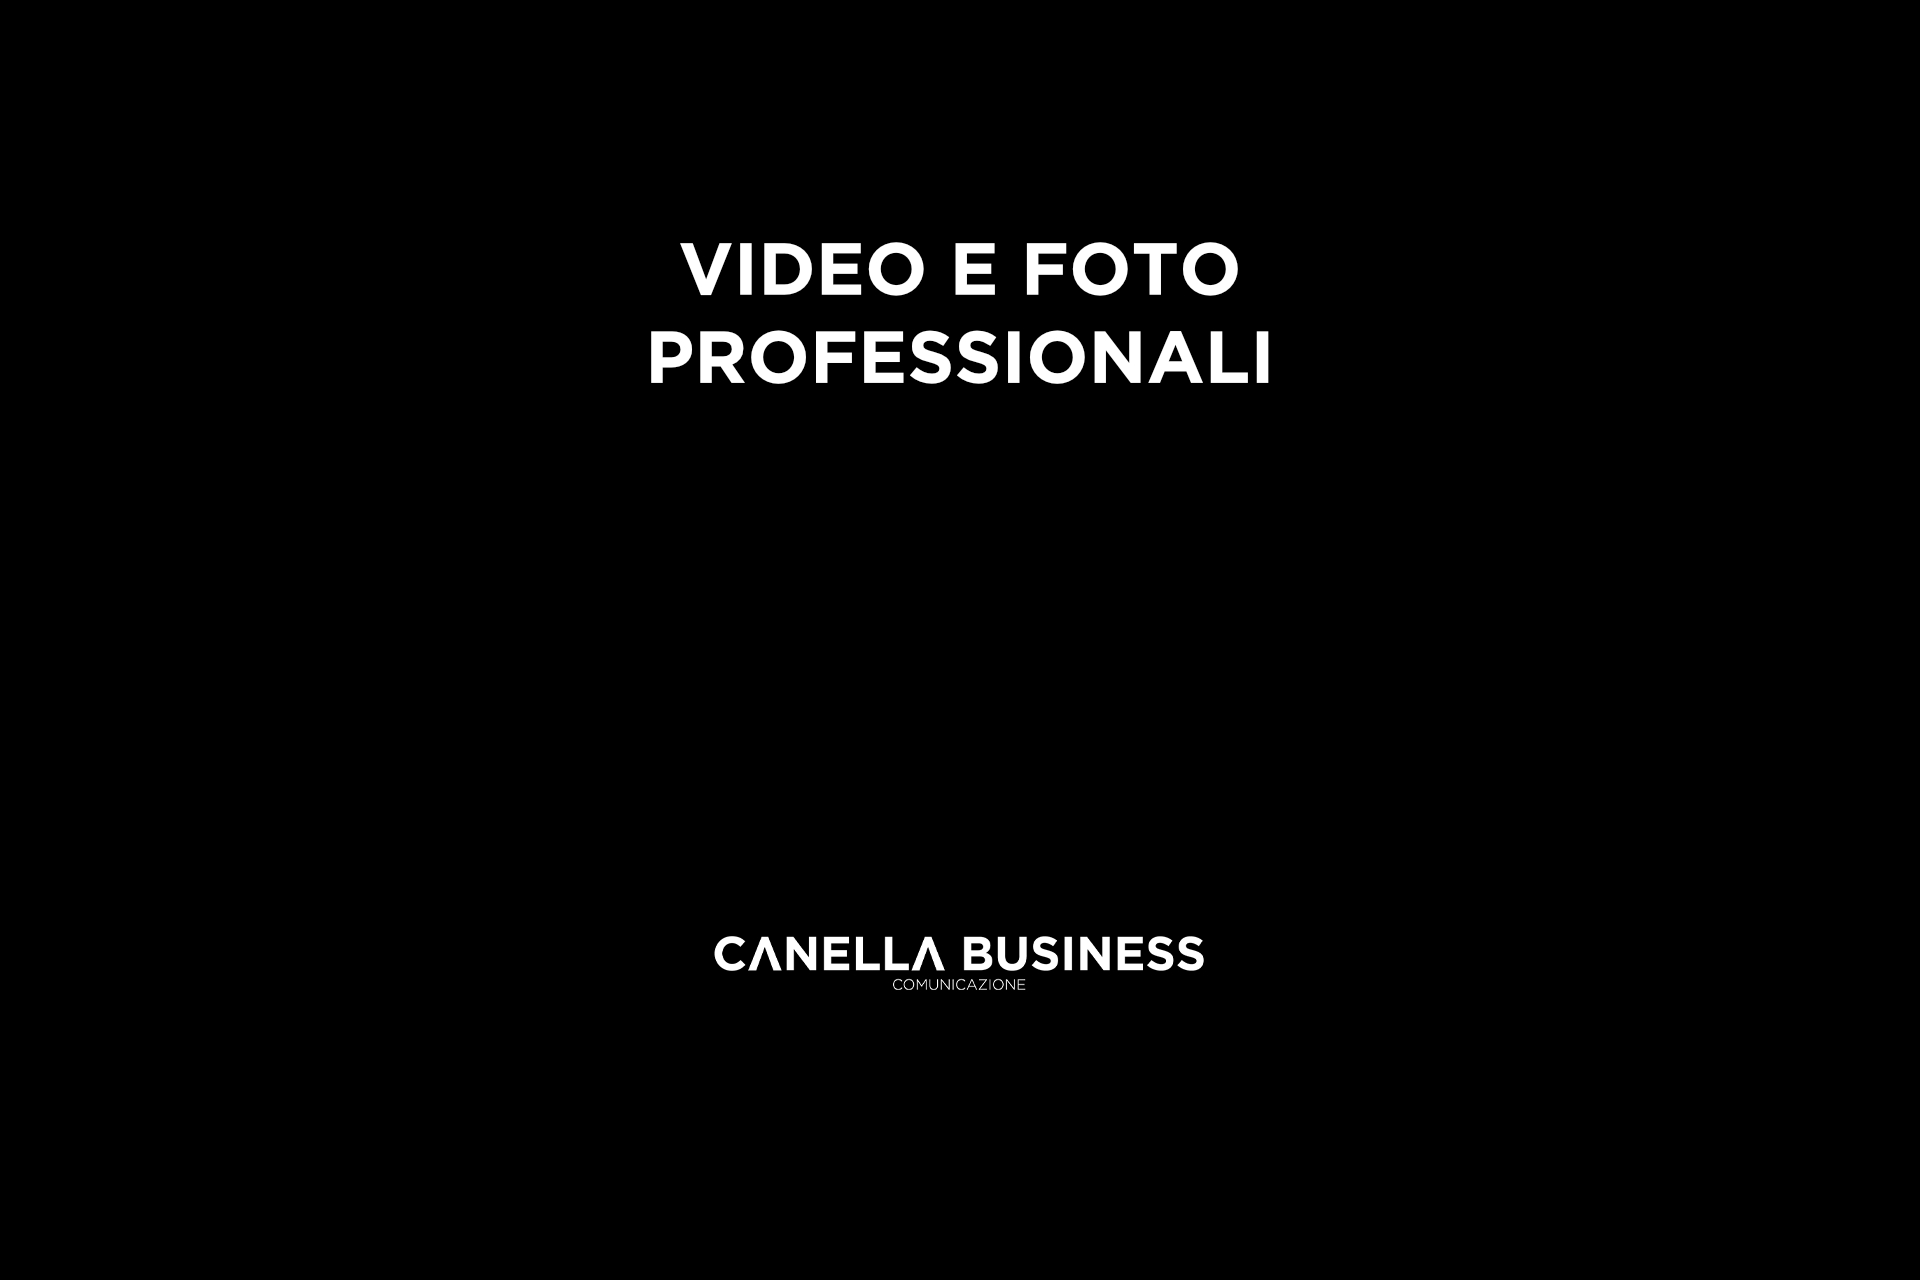 Video e foto professionali